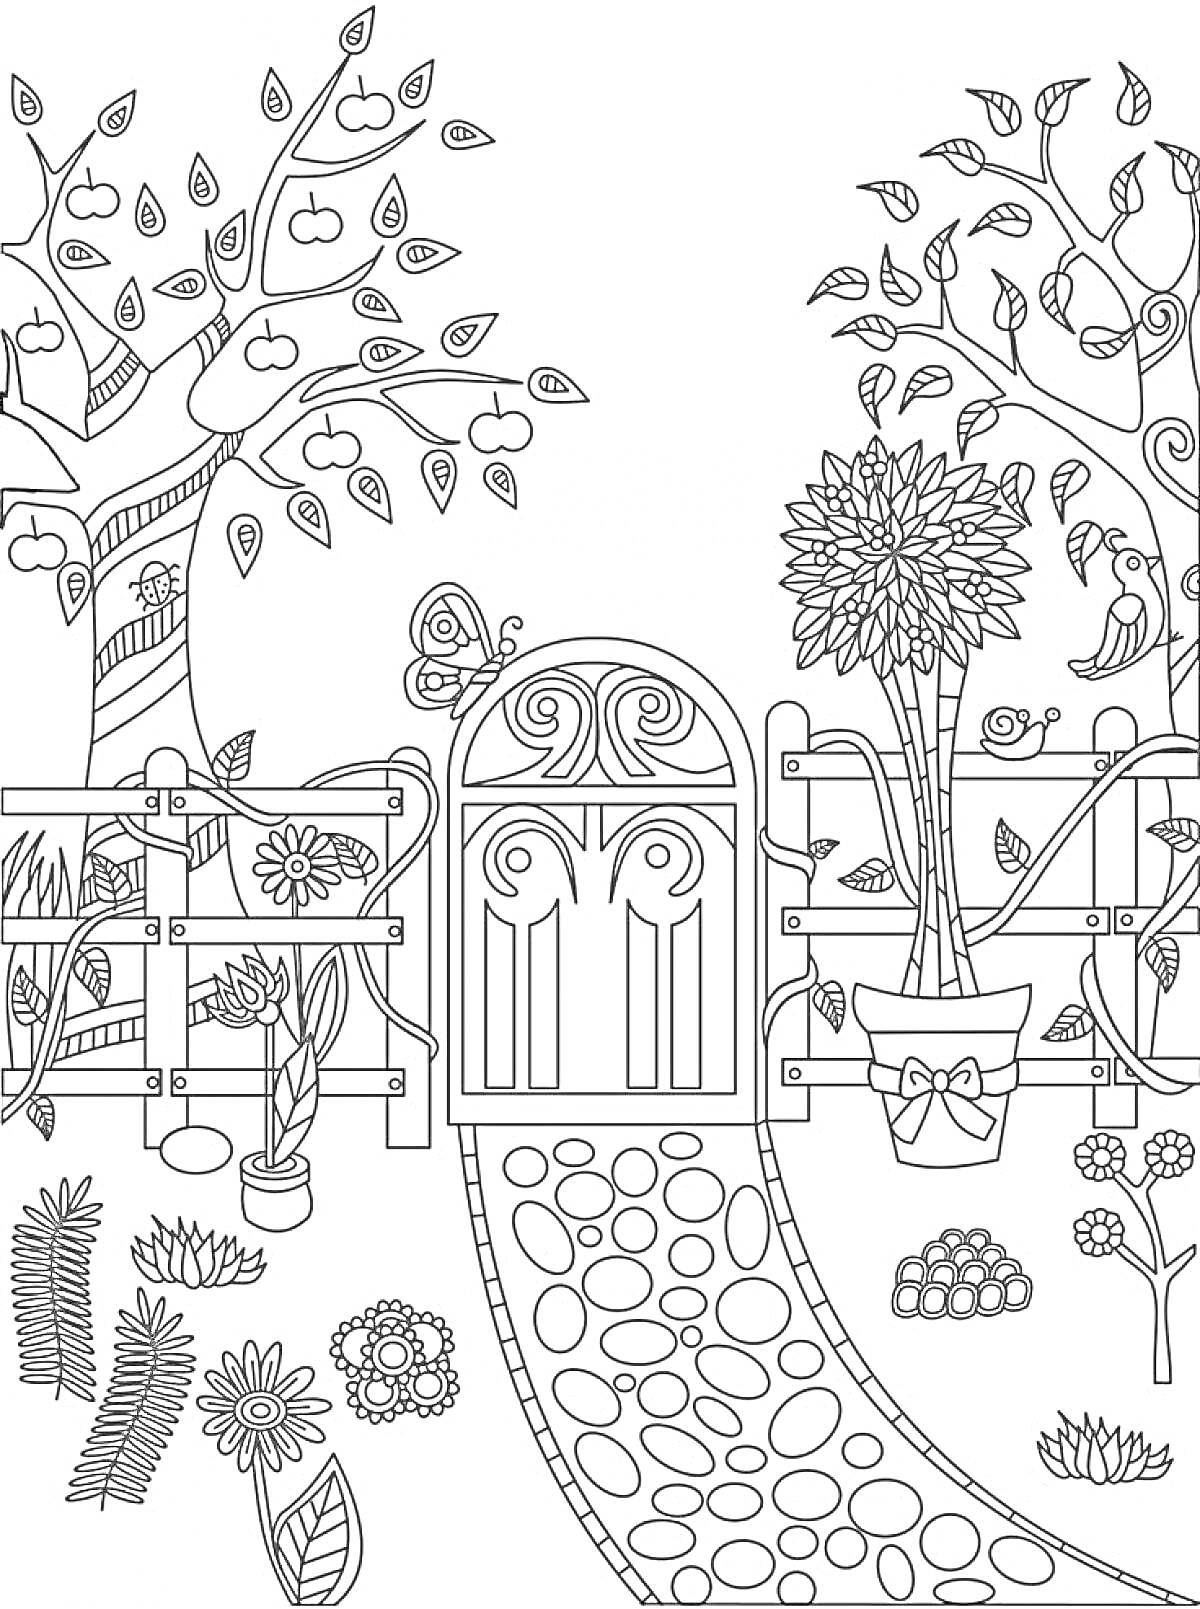 На раскраске изображено: Сад, Деревья, Ворота, Цветы, Забор, Кусты, Дорожка, Листья, Бабочка, Растения, Цветочные горшки, Яблоко, Ветка